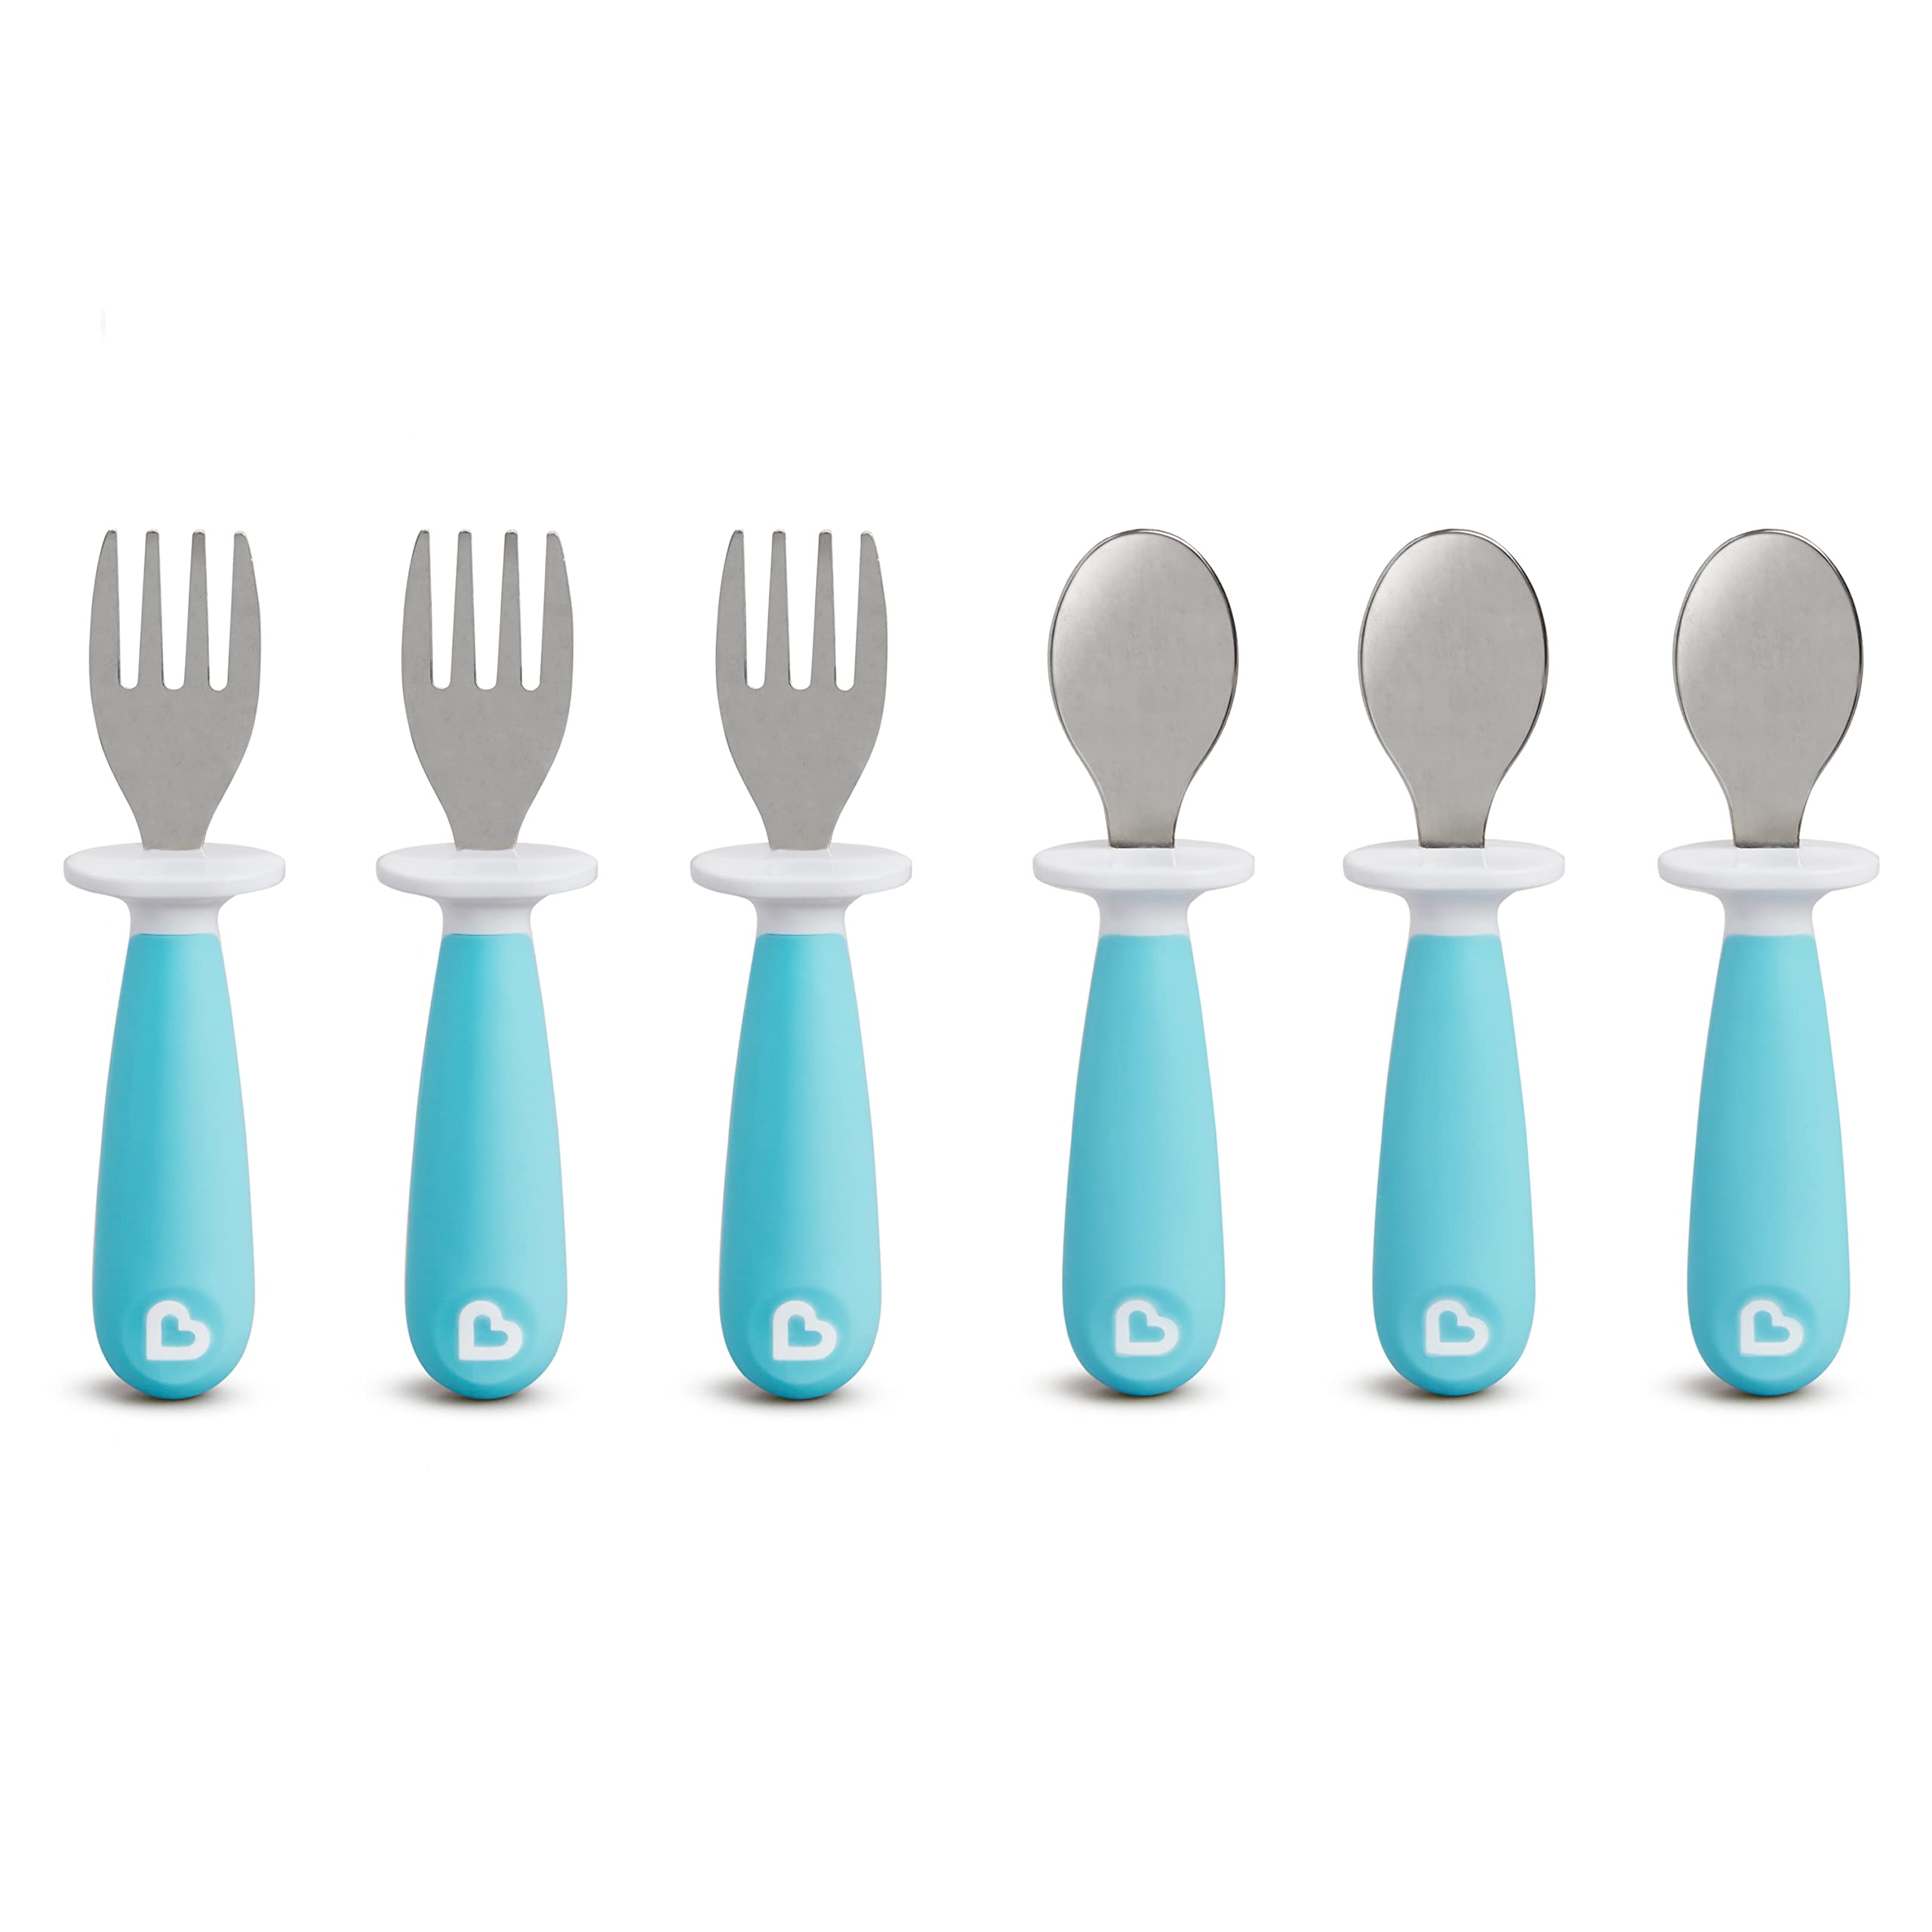 Munchkin® Raise™ Toddler Fork and Spoon Utensil Set, 6 Pack, Blue